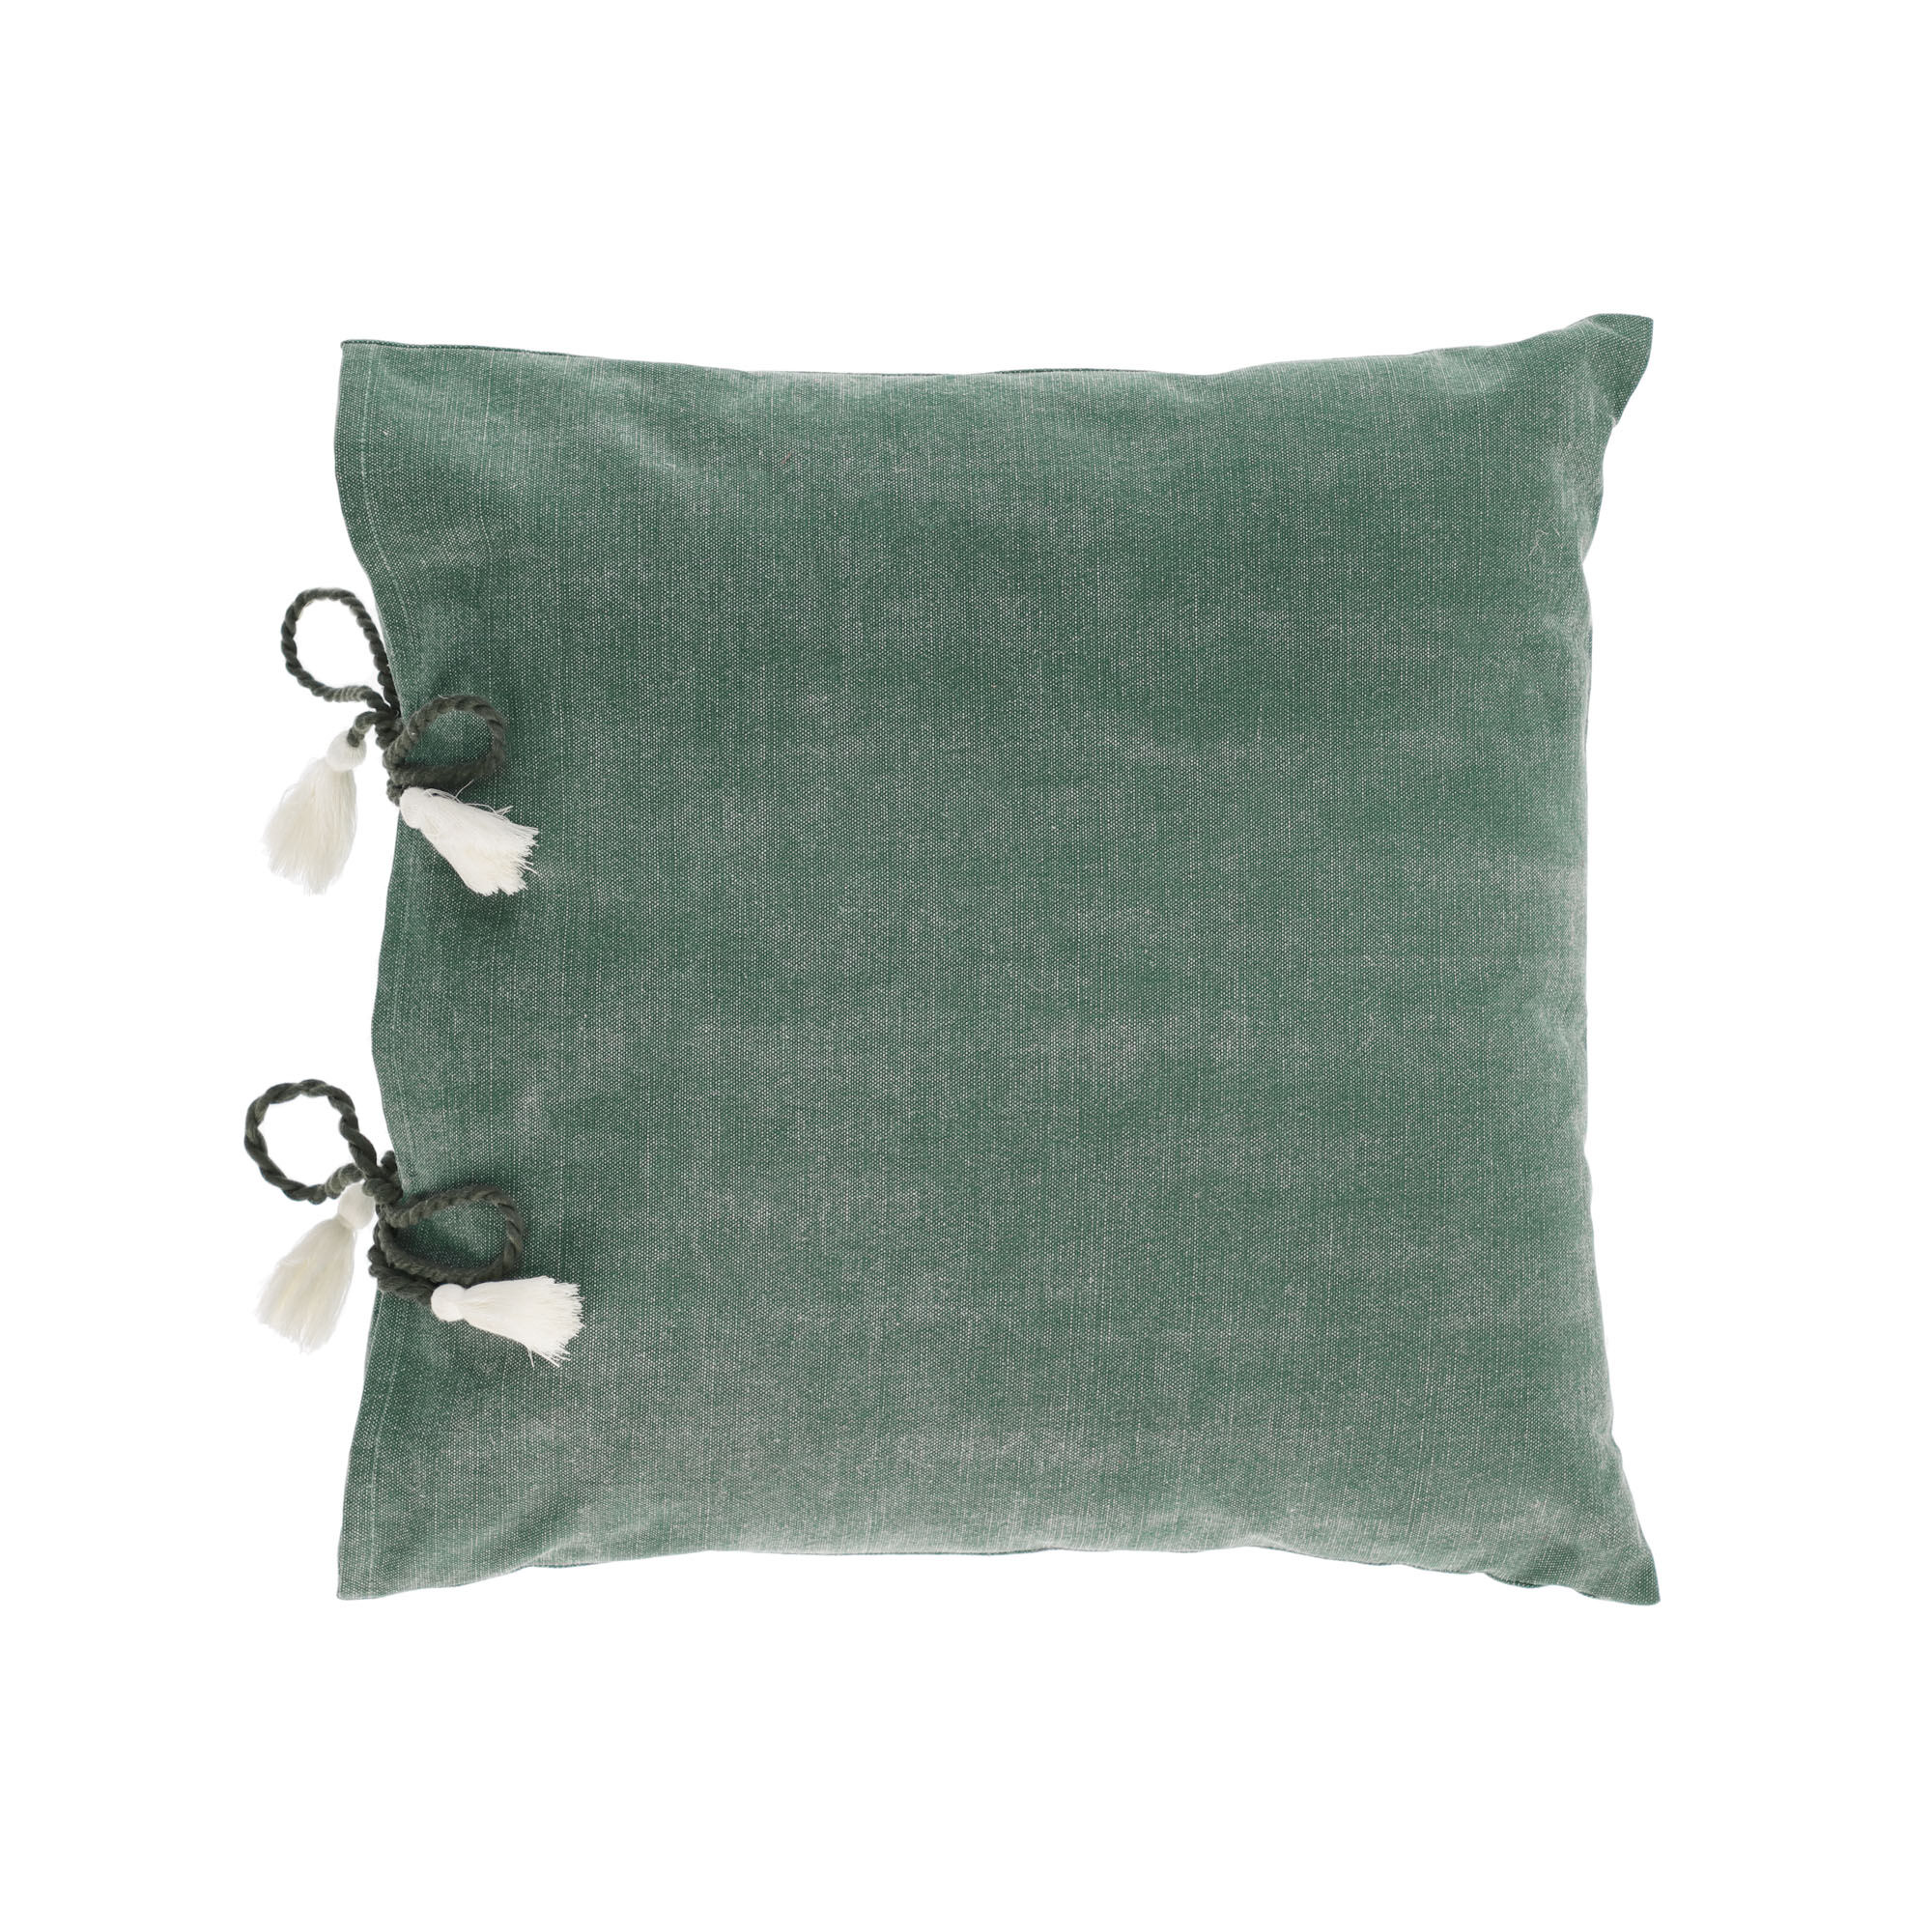 Kave Home Capa almofada Varina 100% algodão verde 45 x 45 cm